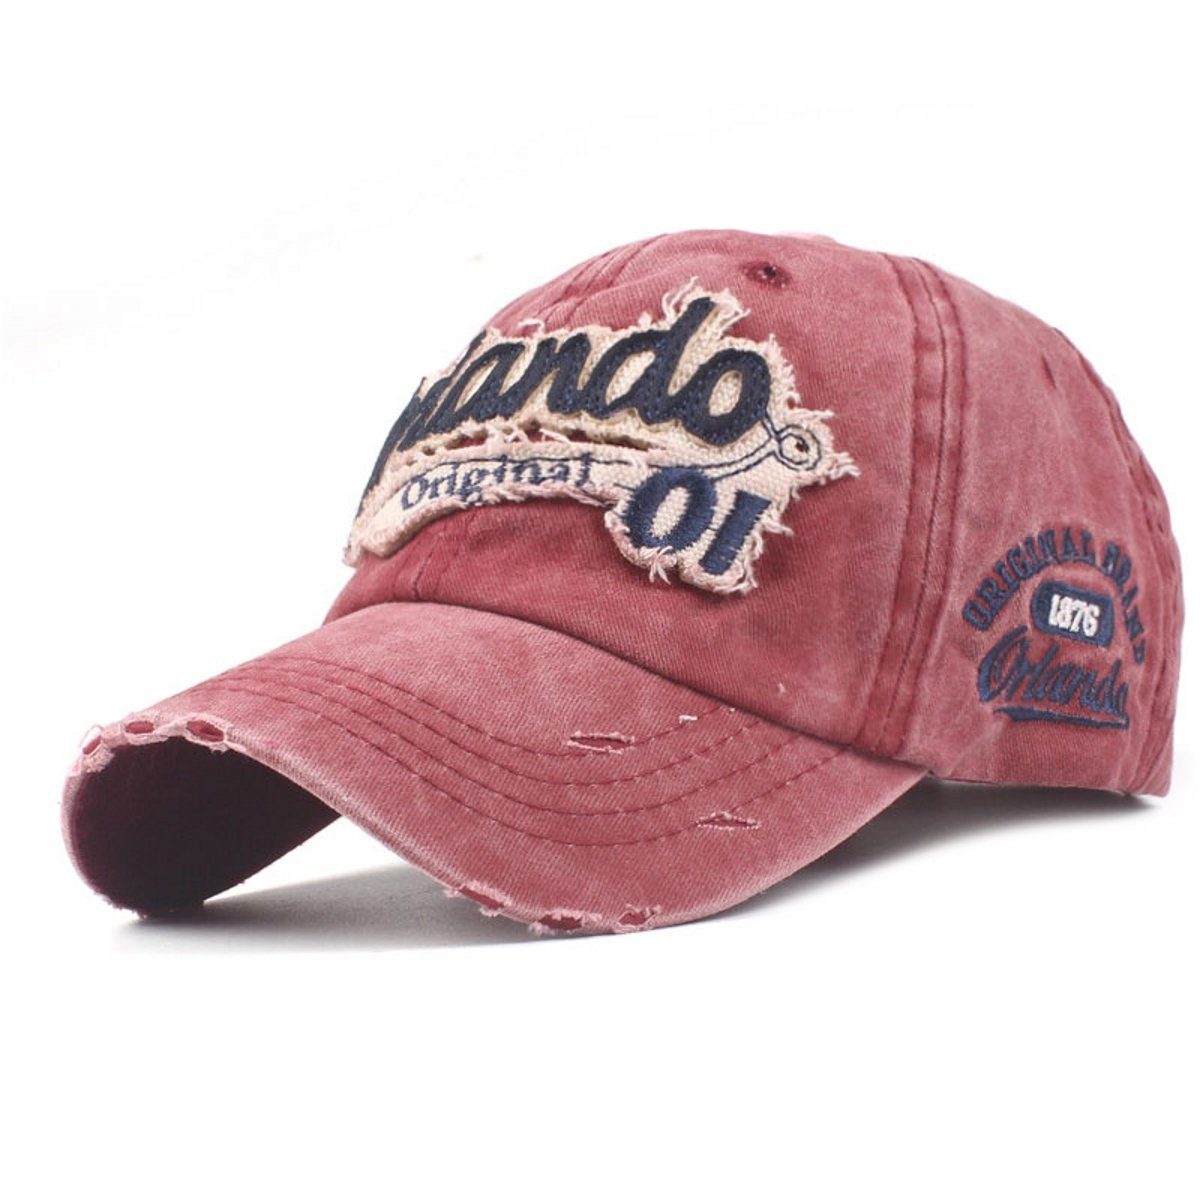 Sporty Baseball Cap Orlando Original Vintage Style Used Washed Look Retro  Baseballcap | Baseball Caps